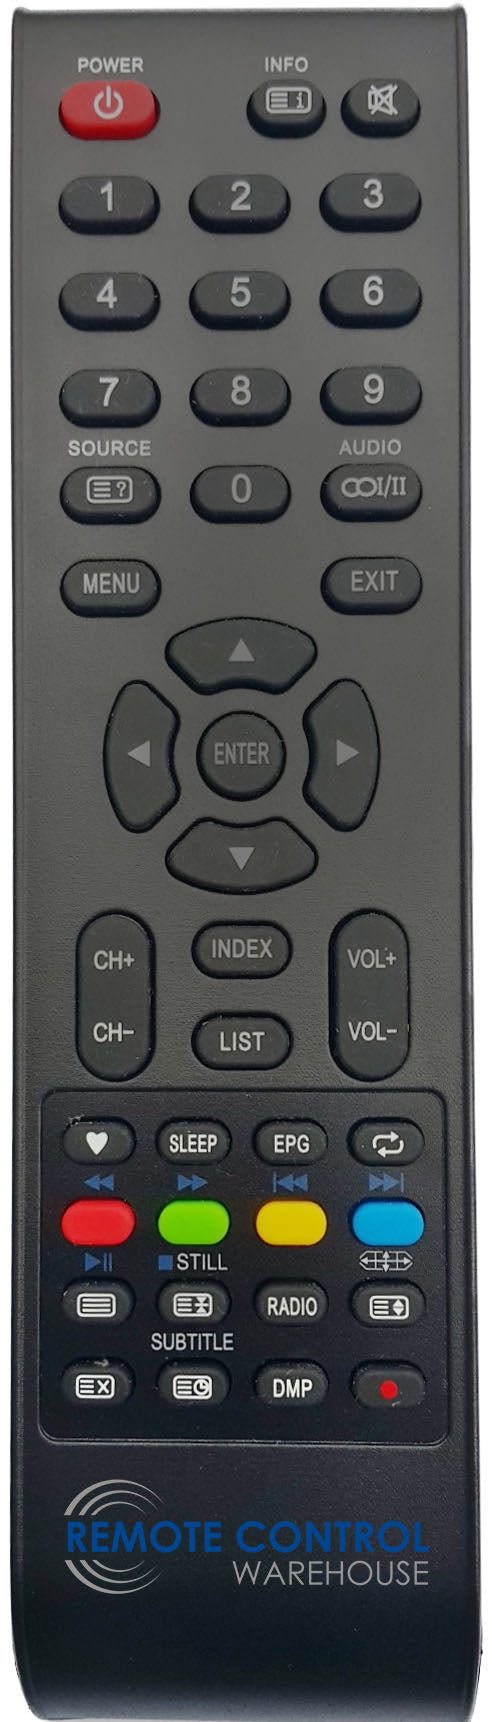 GCBLTV20A-C55 GCBLTV20AC55 CELESTIAL TV Remote Control